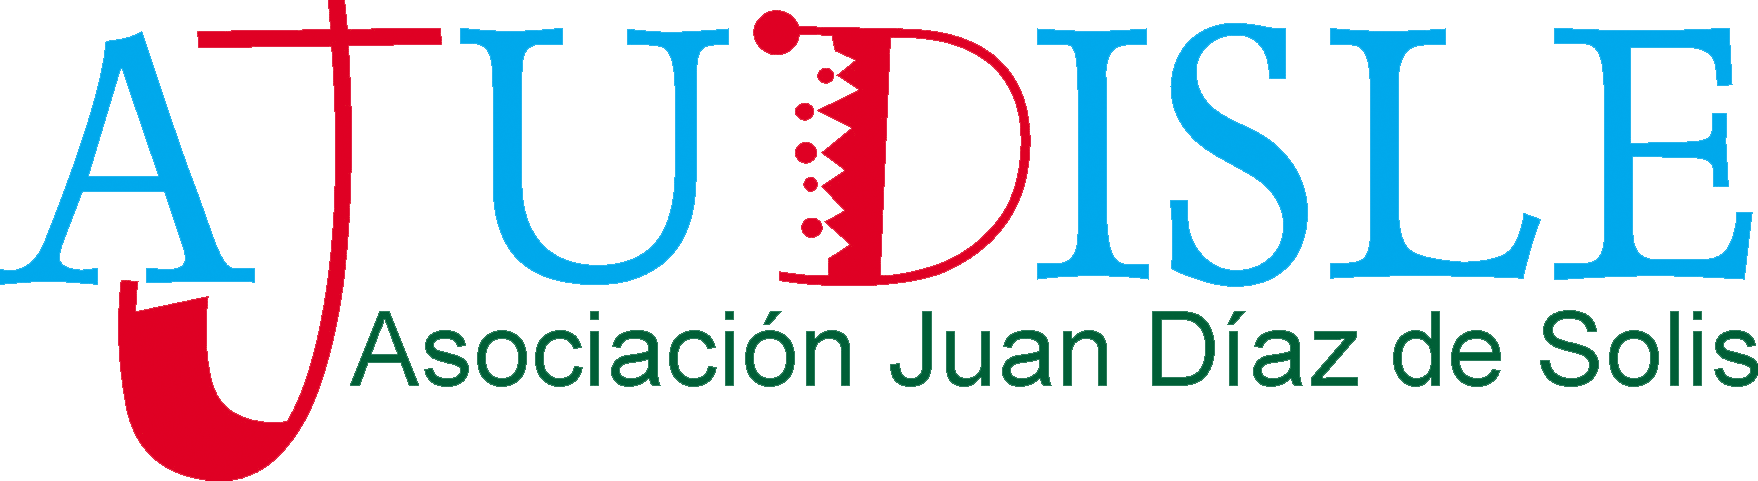 Asociación Juan Díaz de Solís - Ajudisle